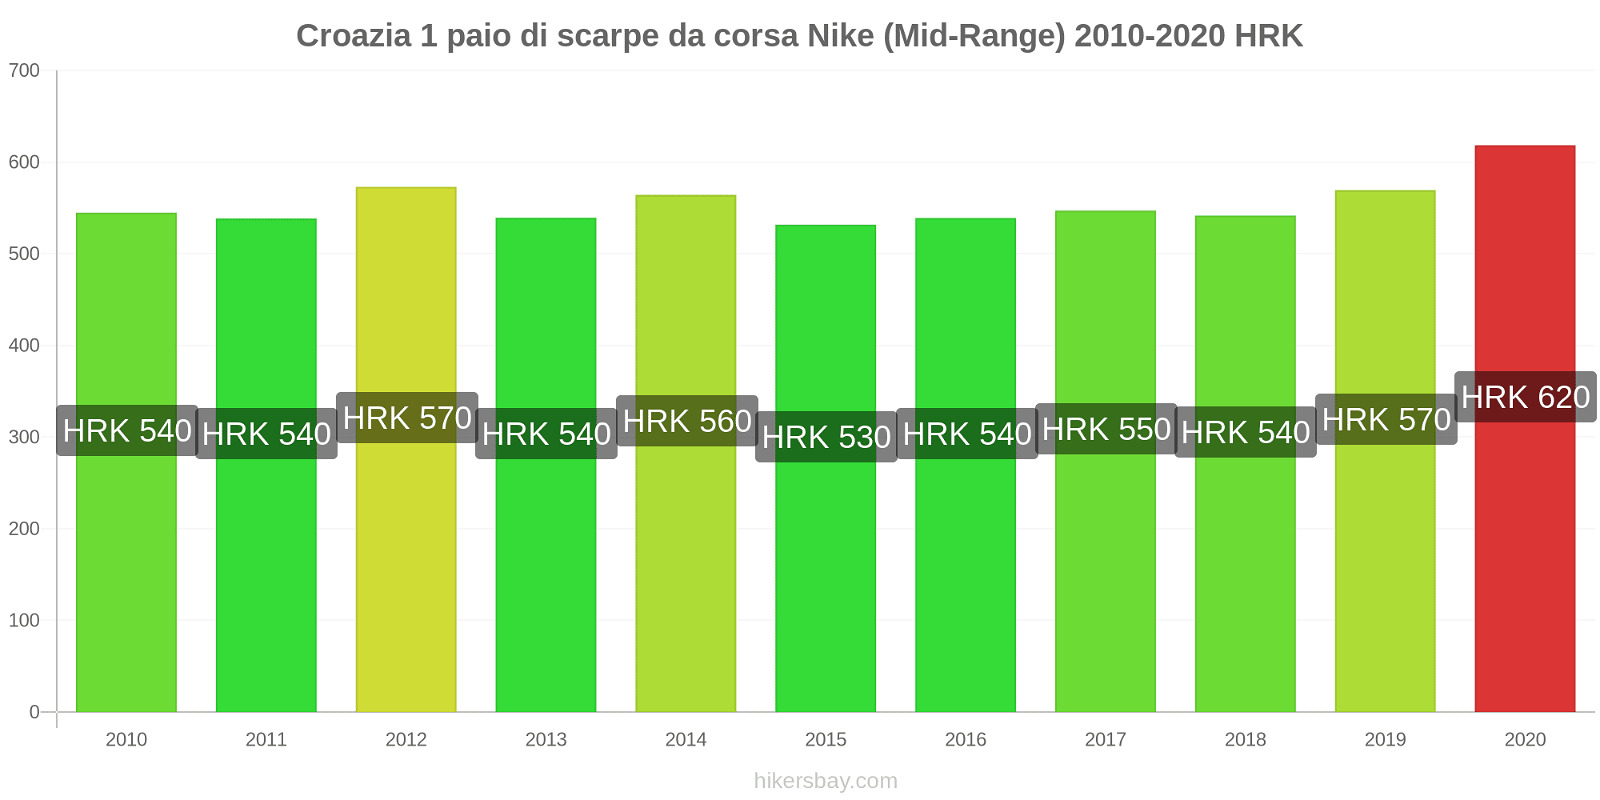 Croazia variazioni di prezzo 1 paio di scarpe da corsa Nike (simile) hikersbay.com